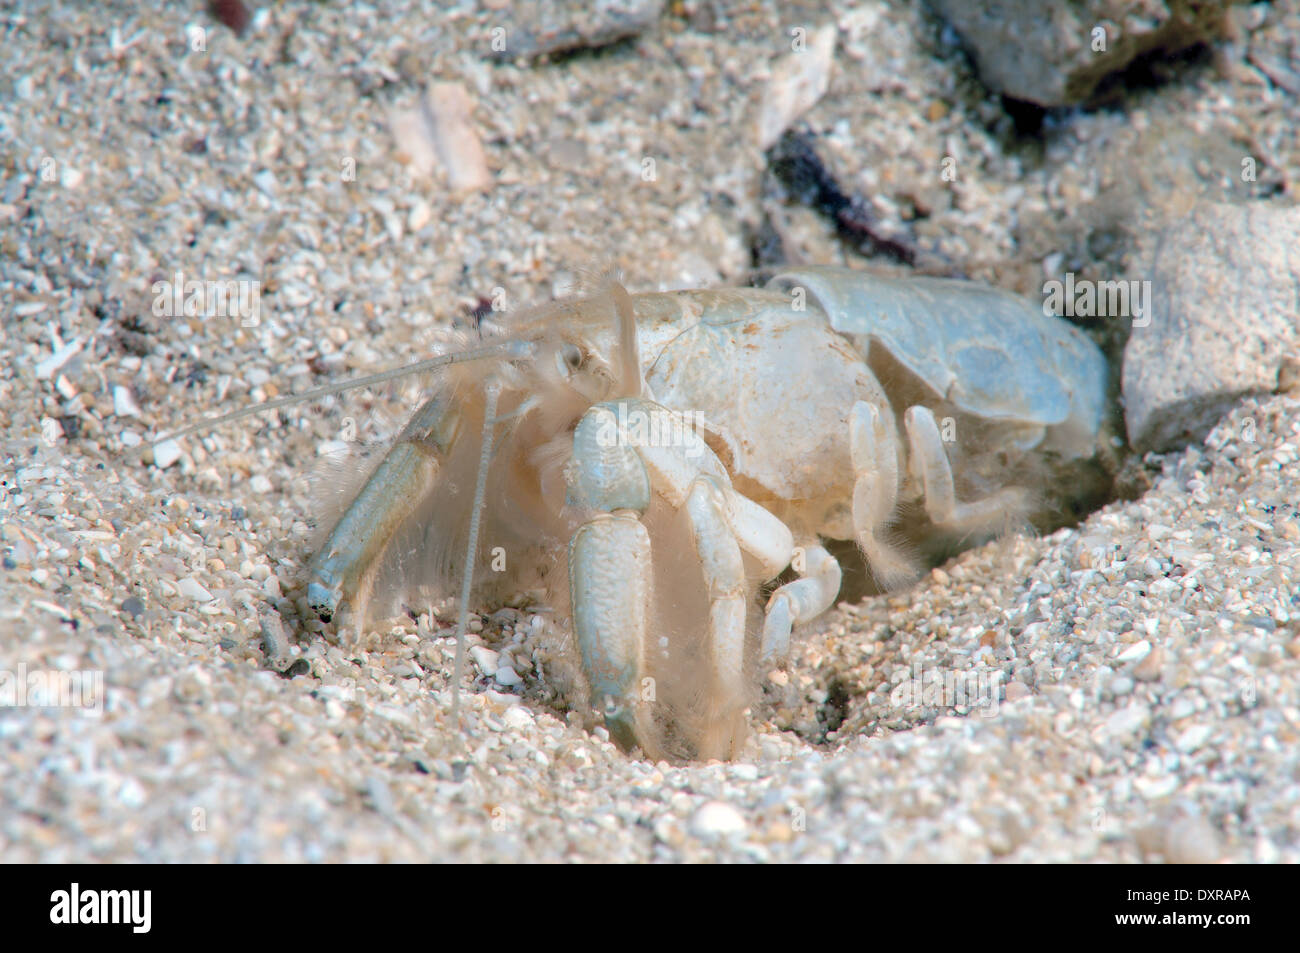 La boue de la Méditerranée ou de la crevette crevette fouisseuse (Upogebia pusilla) Banque D'Images